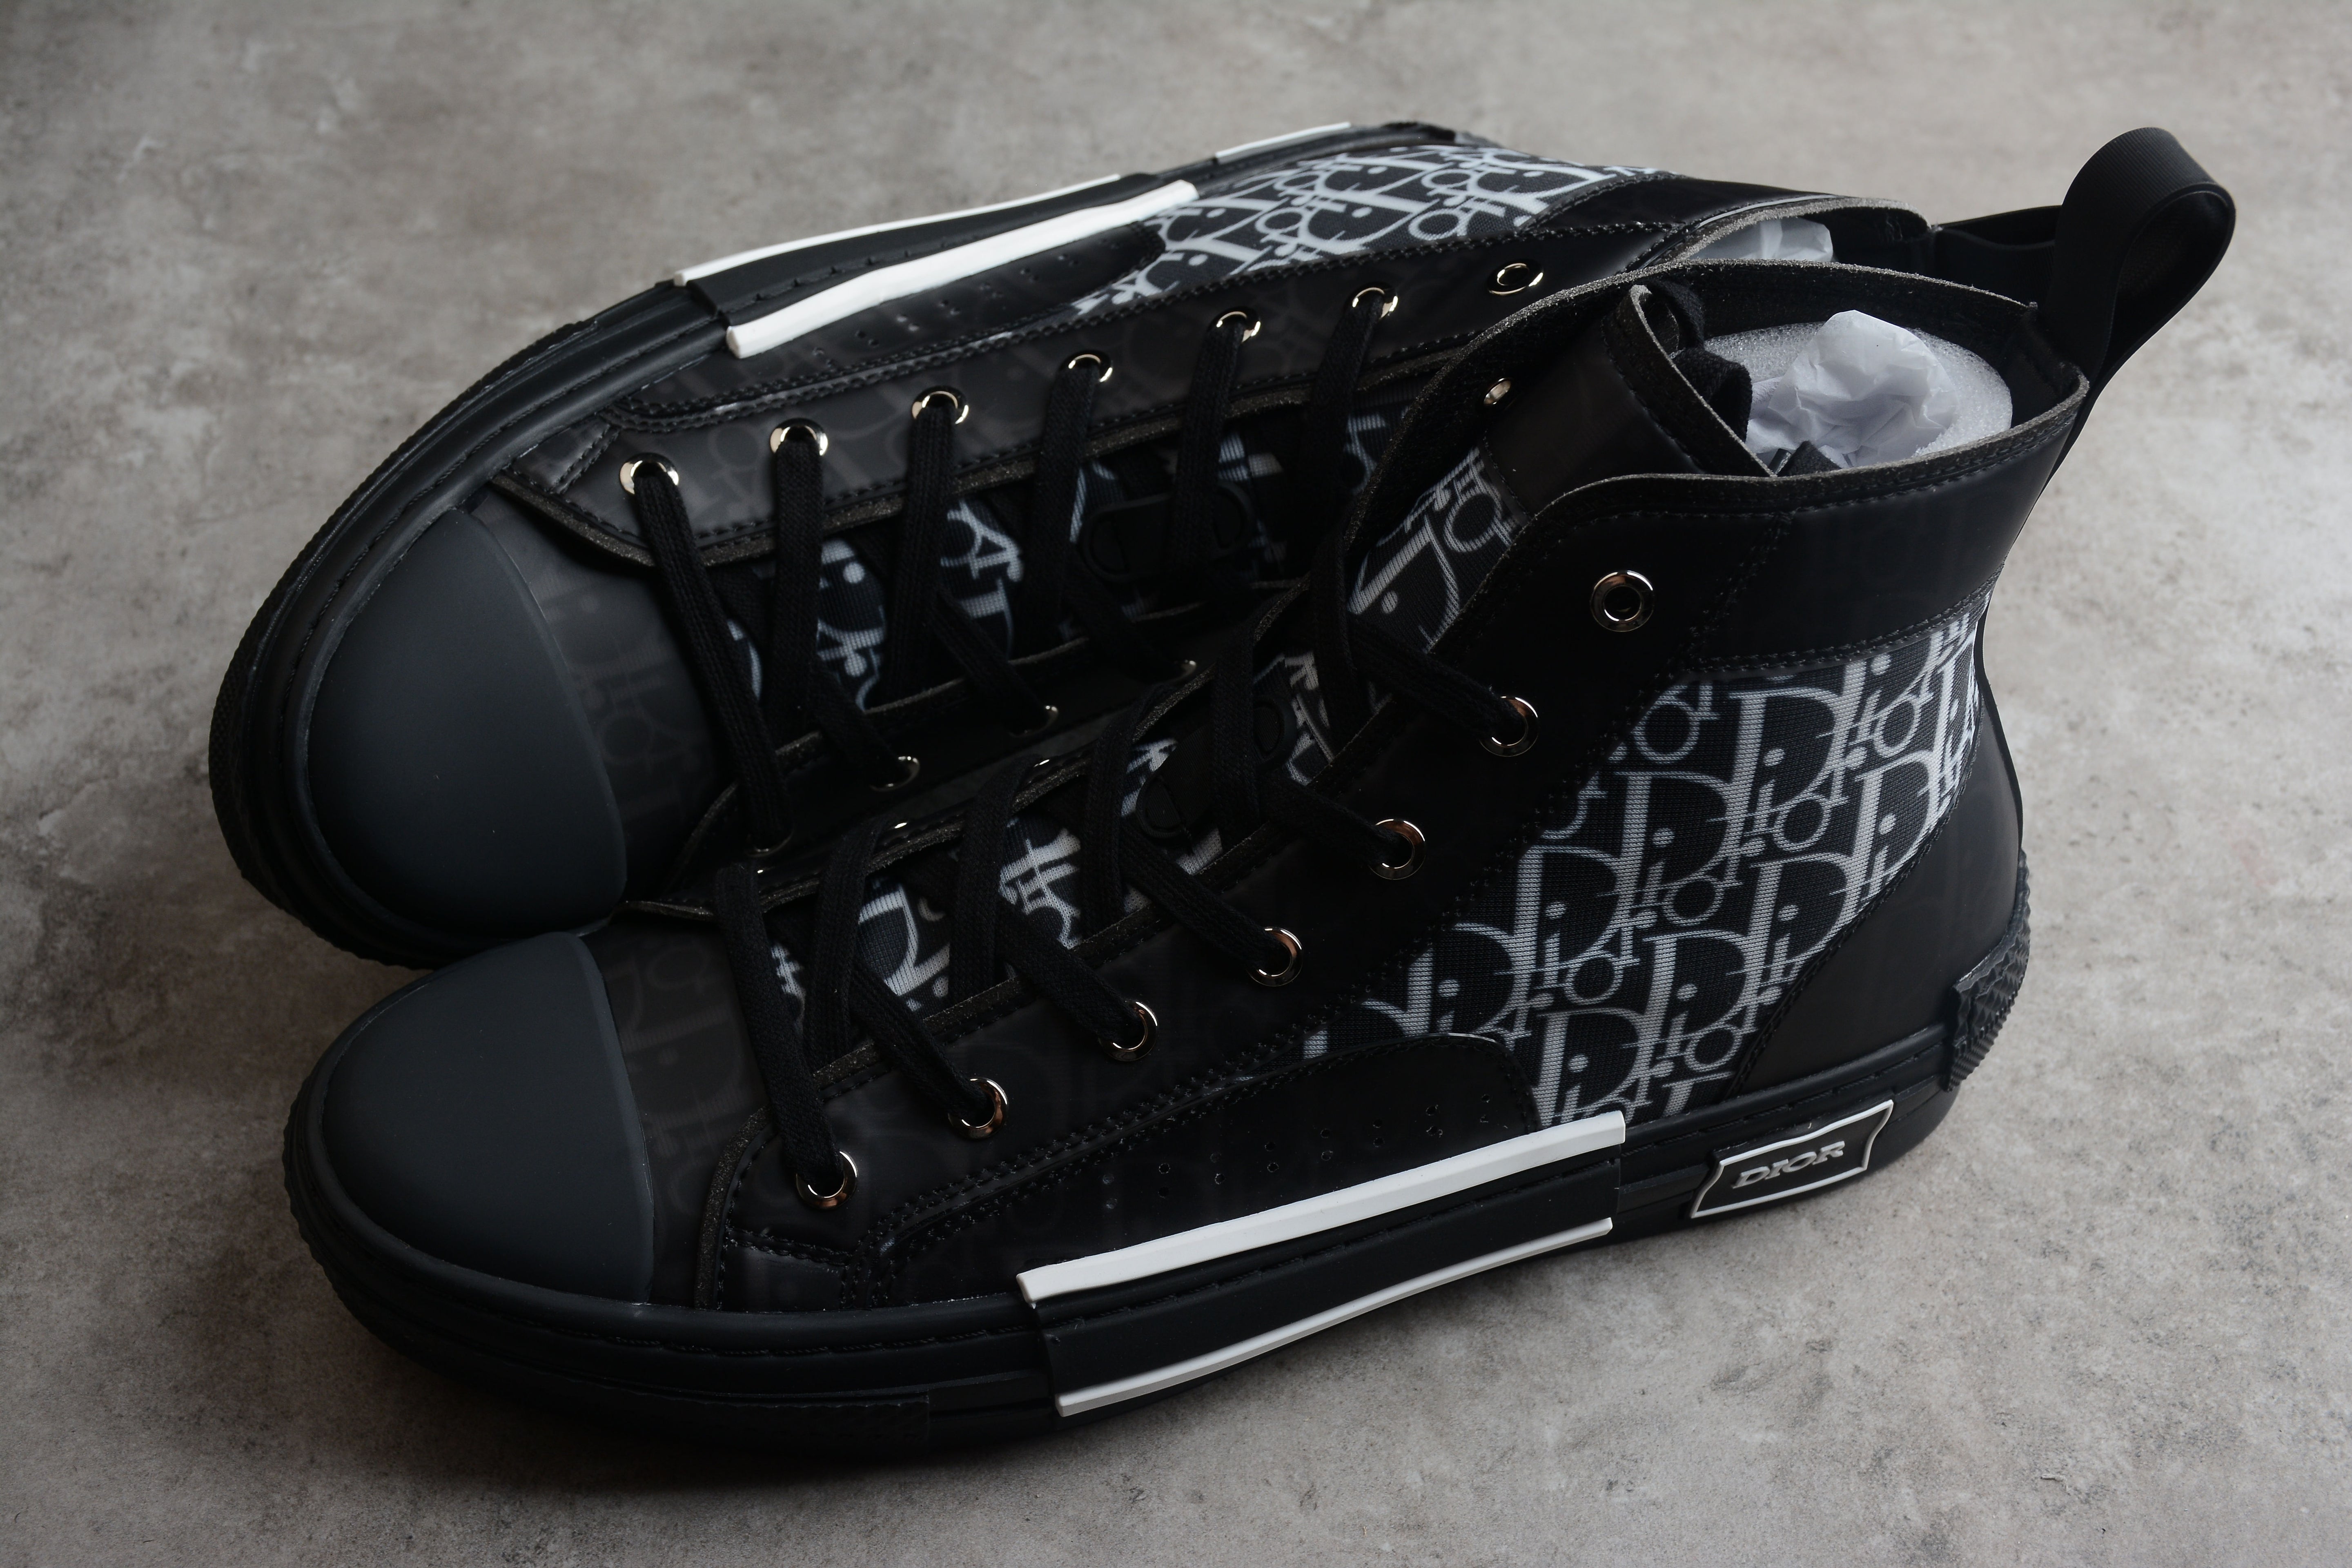 DiorMens B23 Oblique High Top - Black